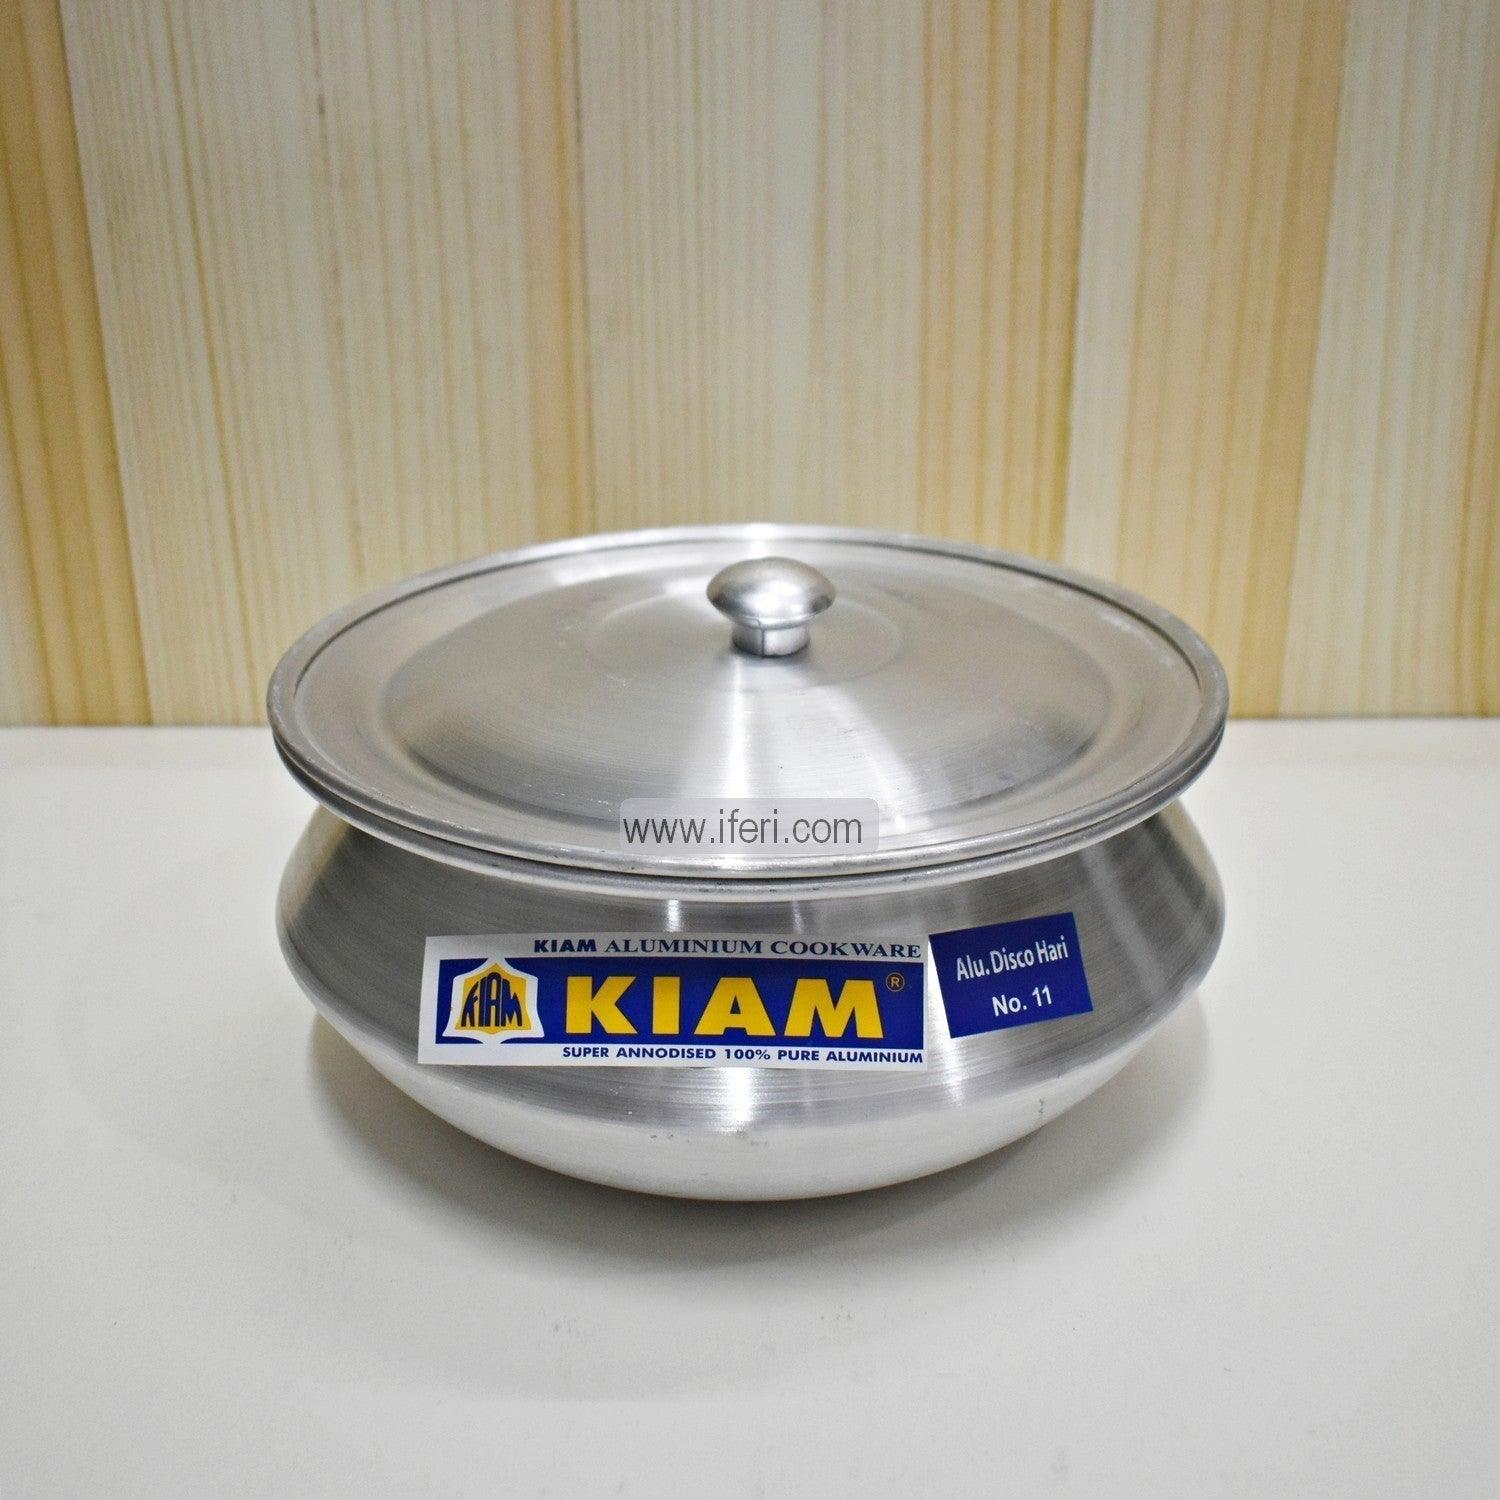 12 cm Kiam Aluminium Hari Cookware With Aluminium Lid BCG02221 Price in Bangladesh - iferi.com